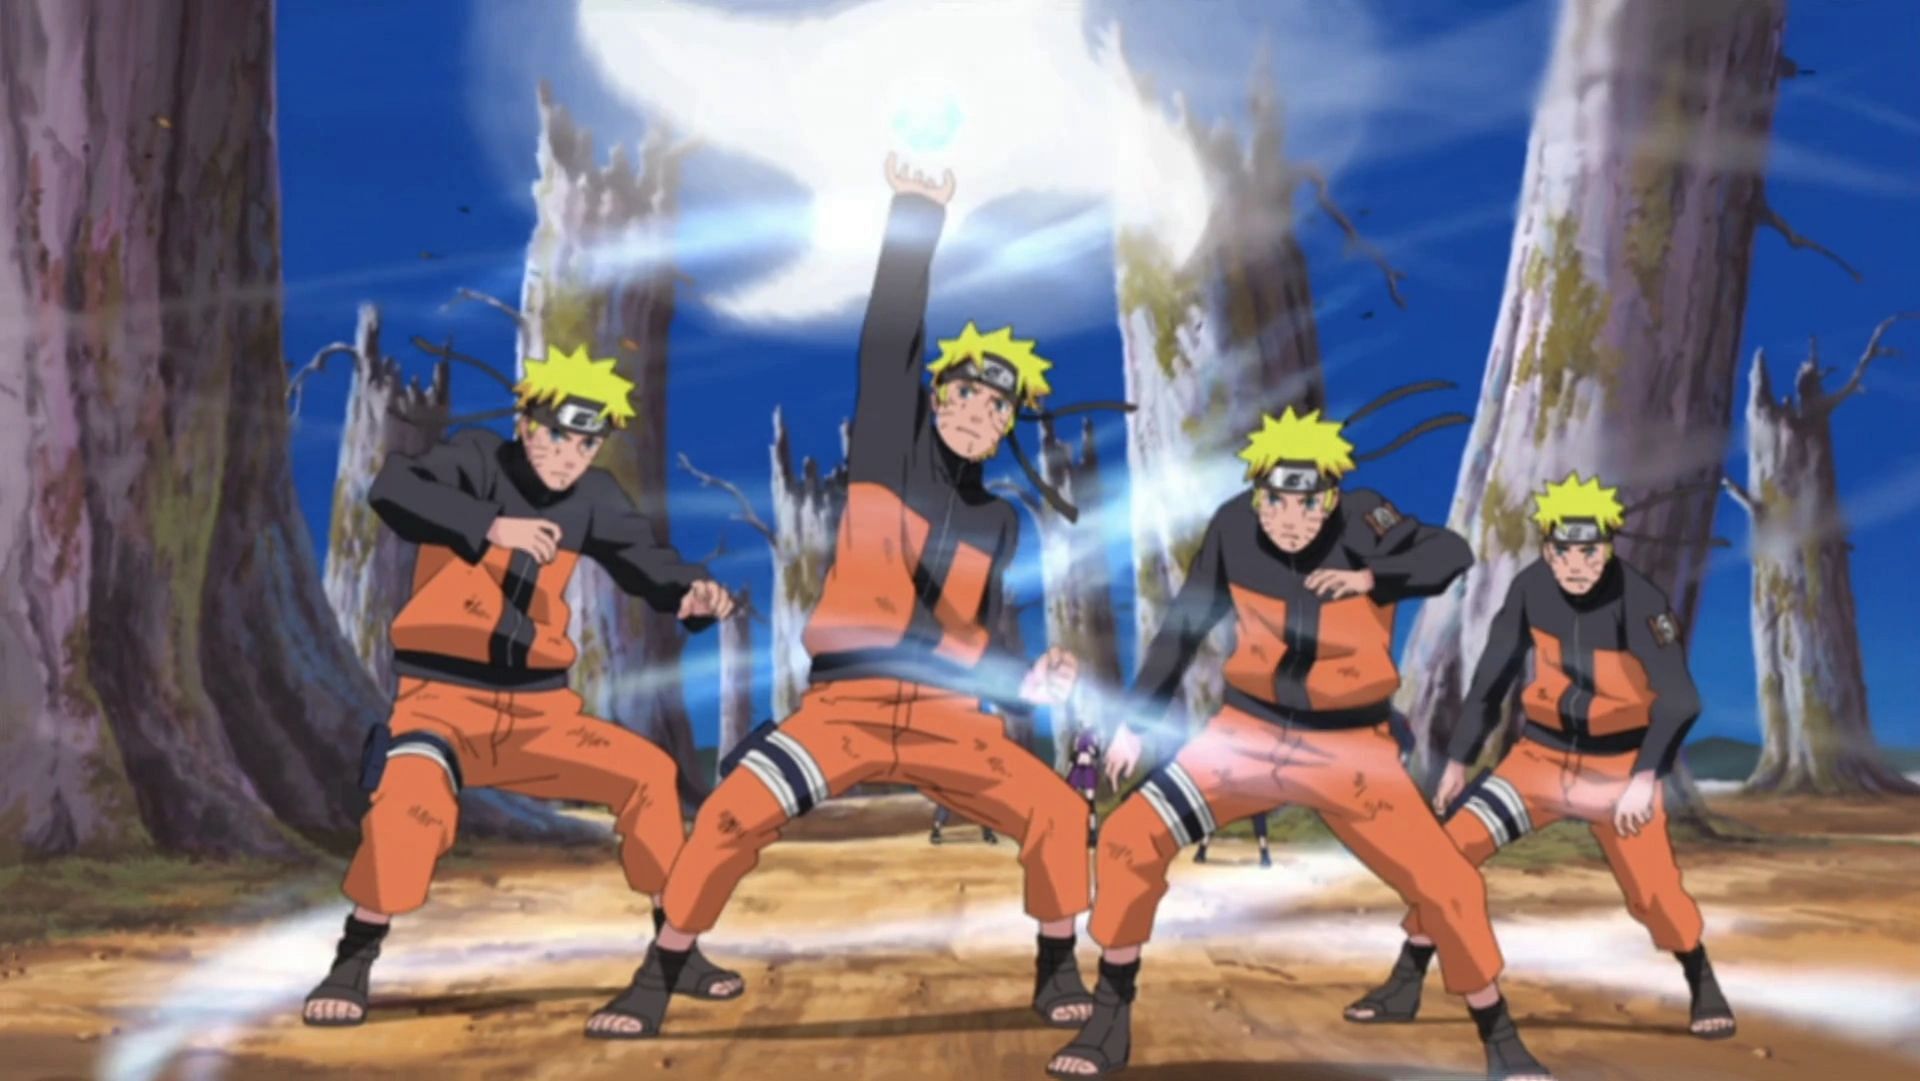 Naruto performing Rasenshuriken with his clones (Image via Masashi Kishimoto/Studio Pierrot/Viz Media)